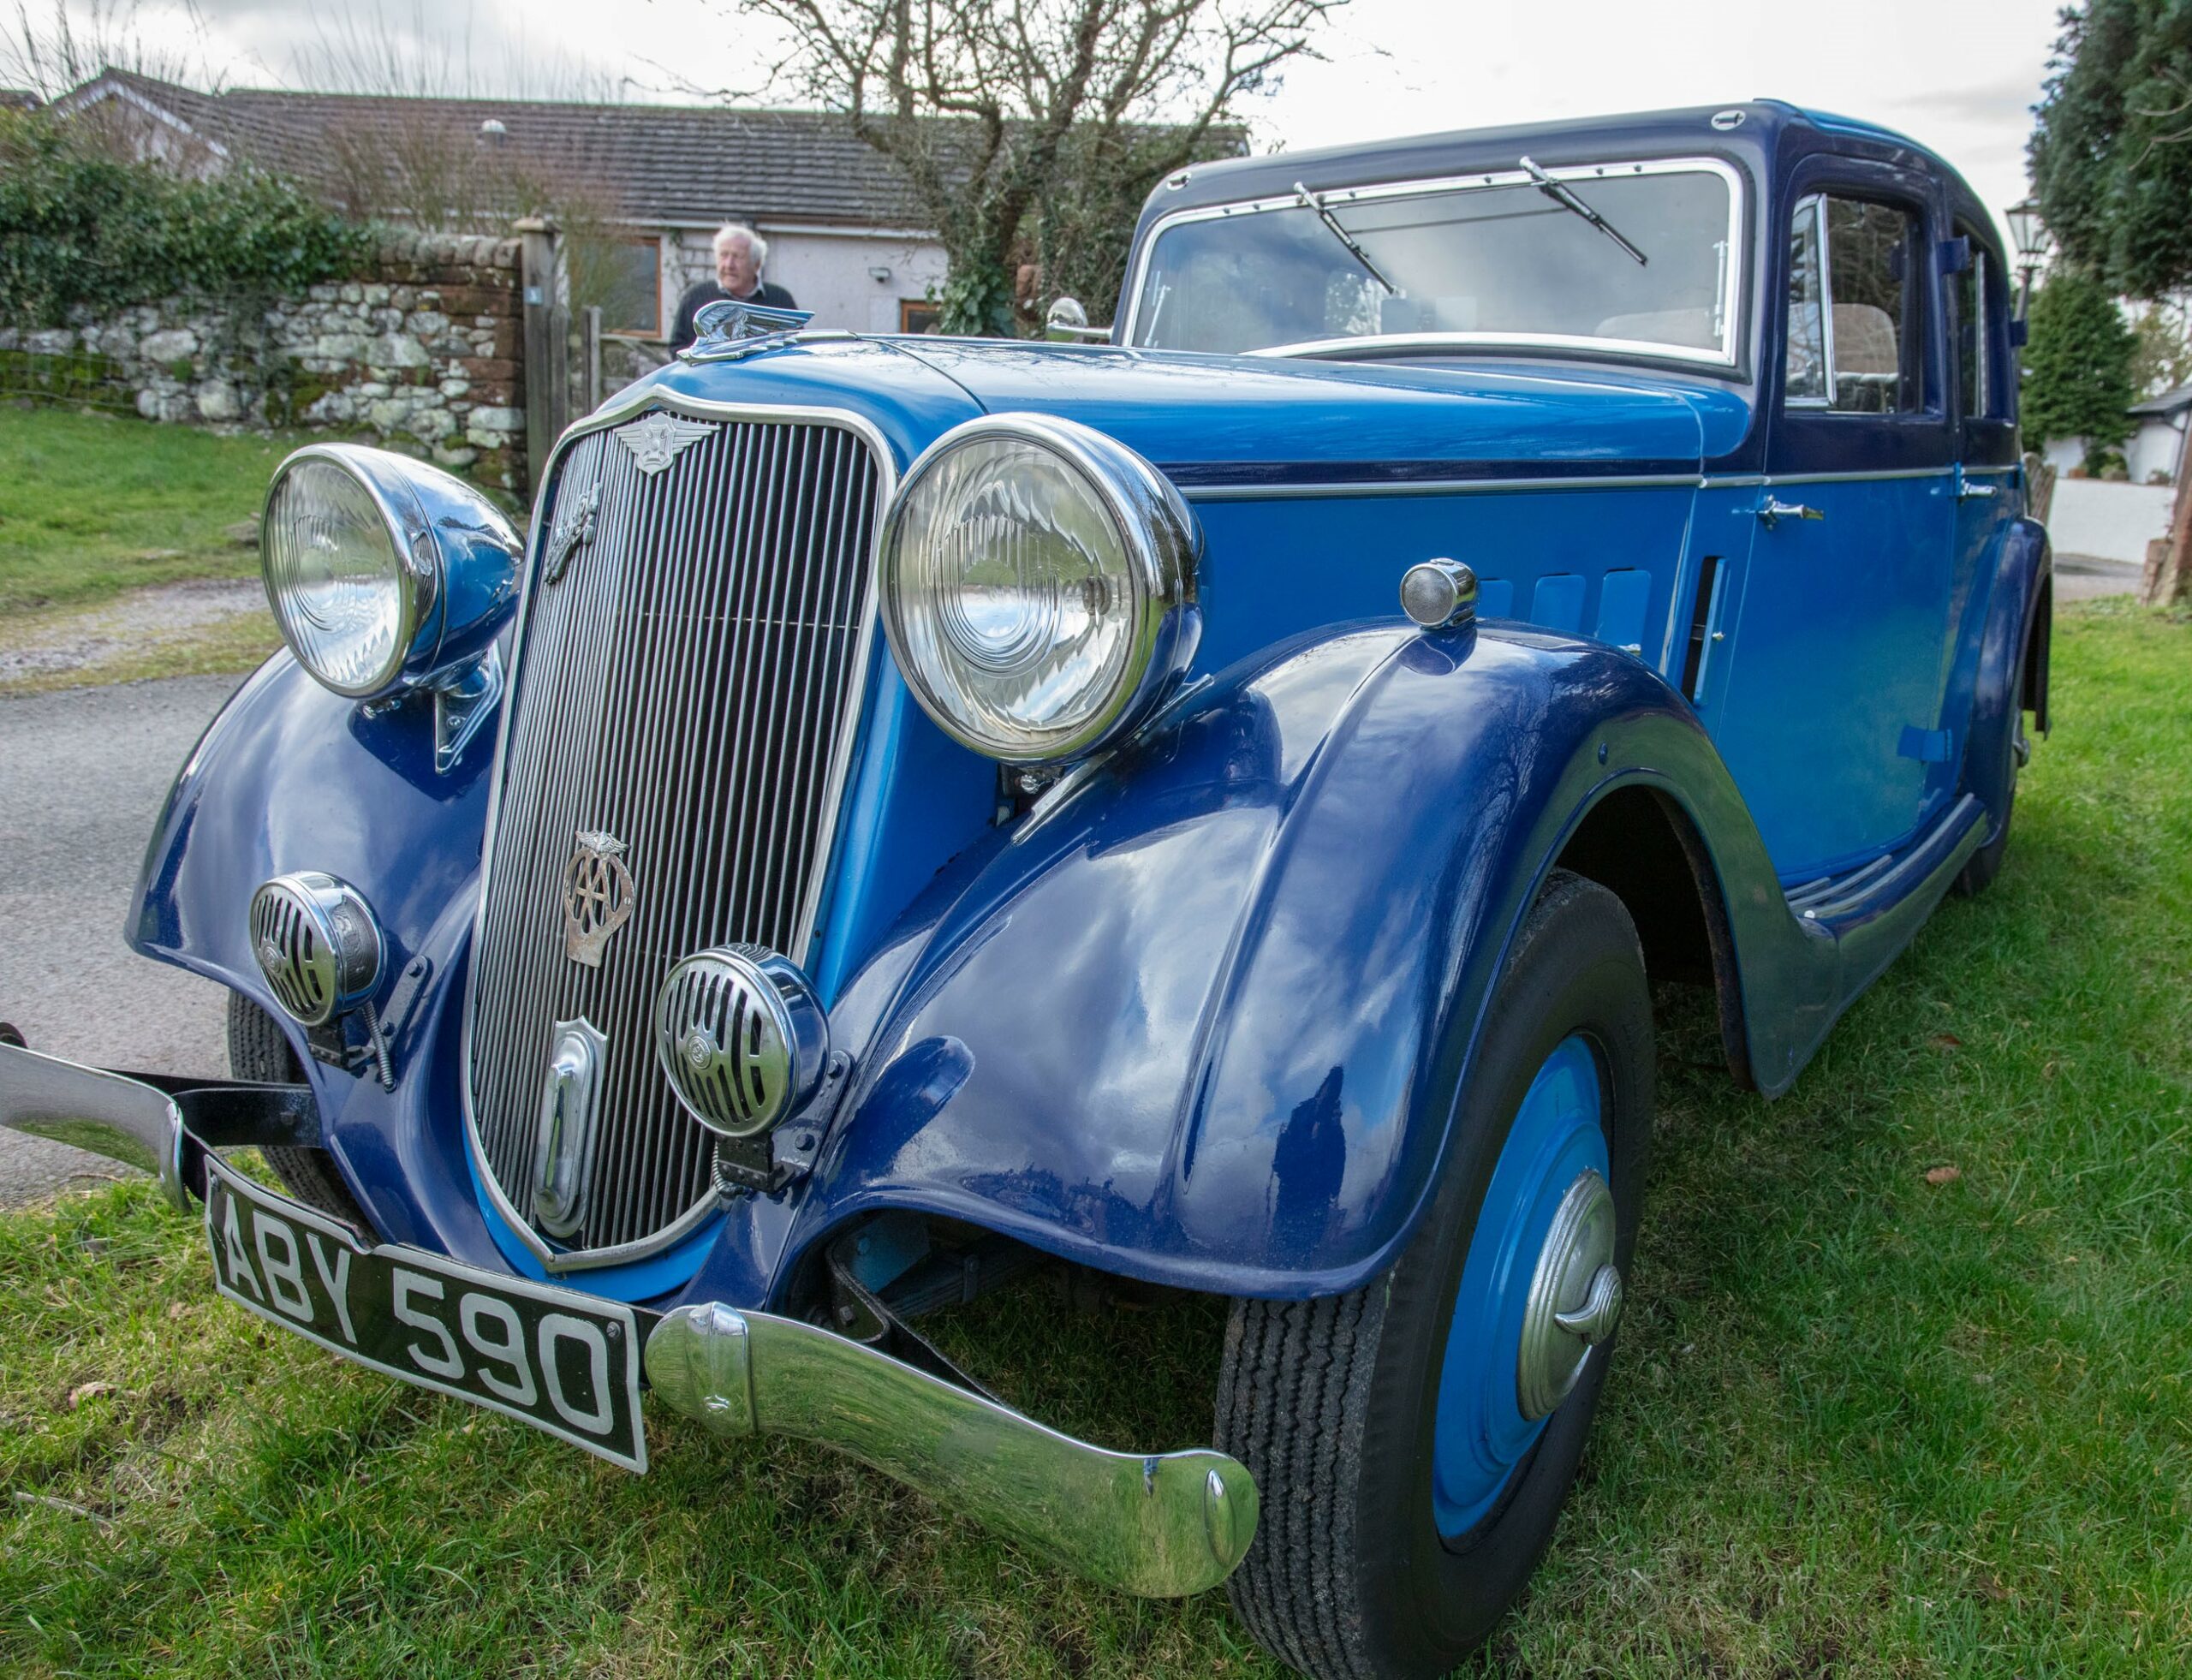 1934 Crossley Regis 6 Evoke Classics classic cars auction online